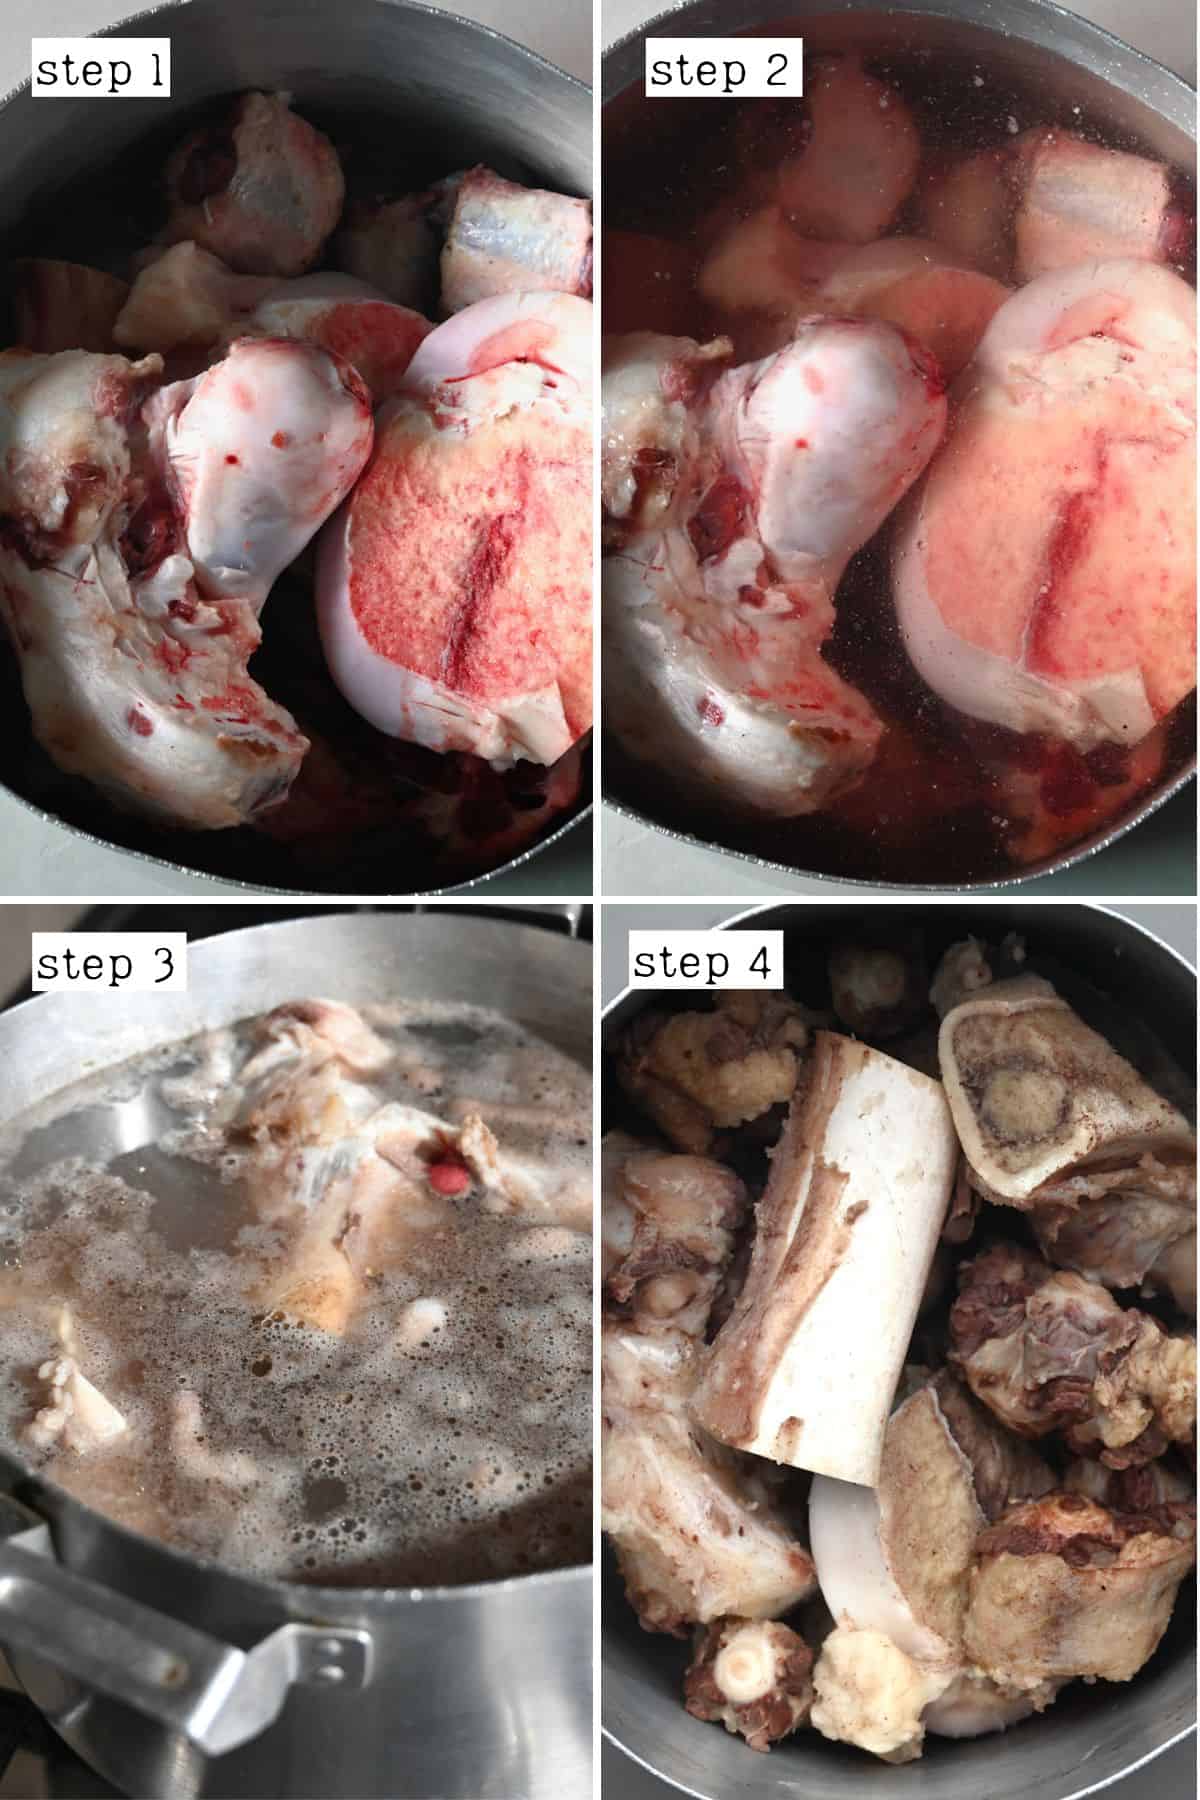 Steps for boiling beef bones